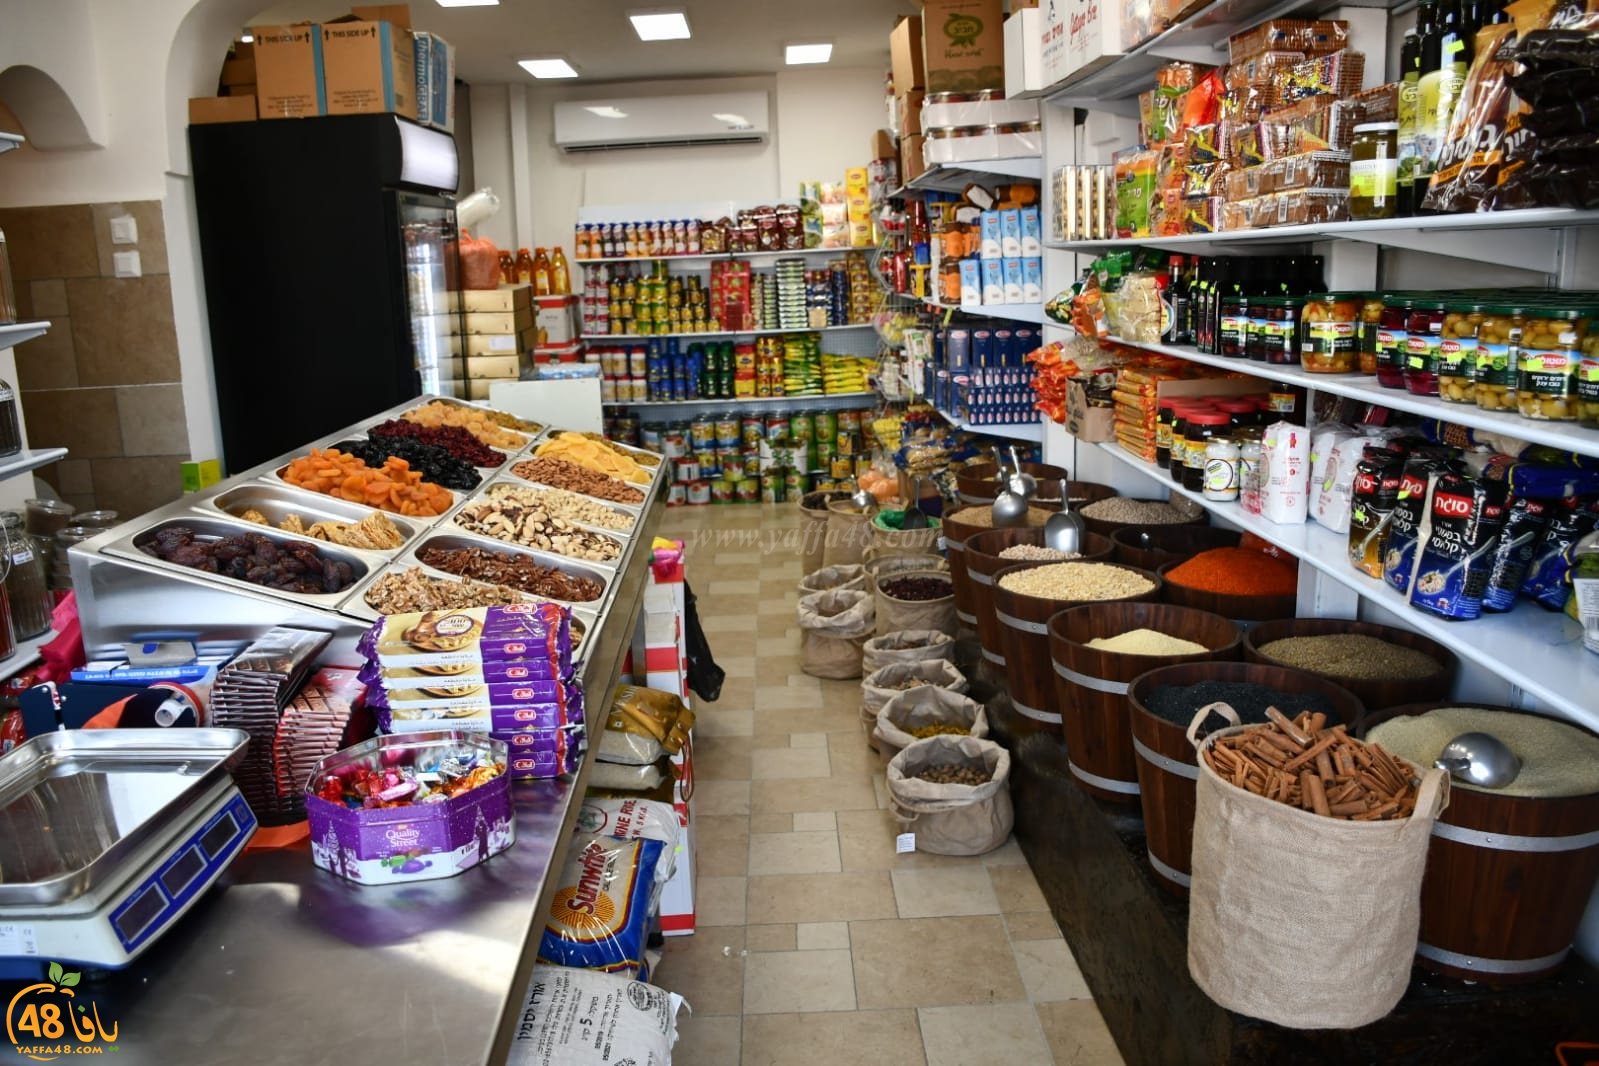  يافا: انتقال محل الزهراء للعطارة والمواد الغذائية الى شارع ييفت 92 